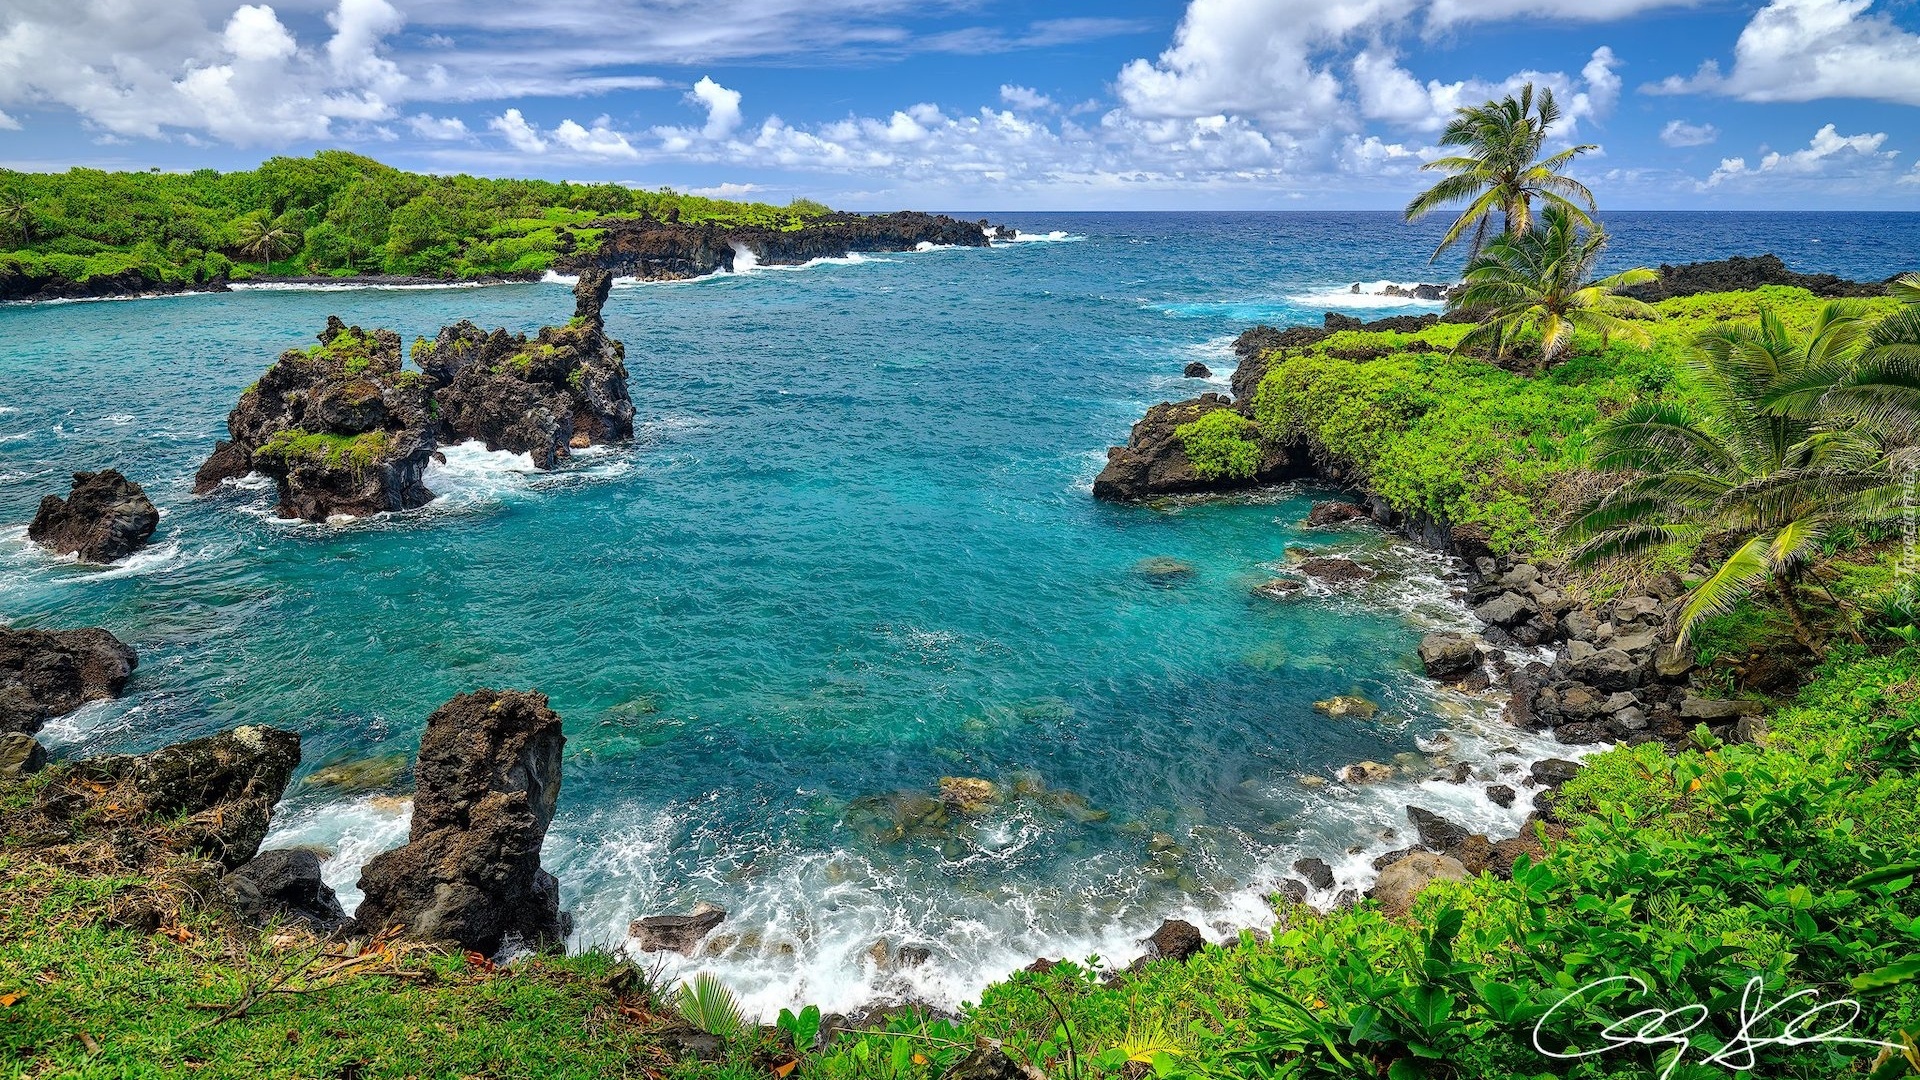 Stany Zjednoczone, Hawaje, Wyspa Maui, Park stanowy Waianapanapa, Morze, Skały, Palmy